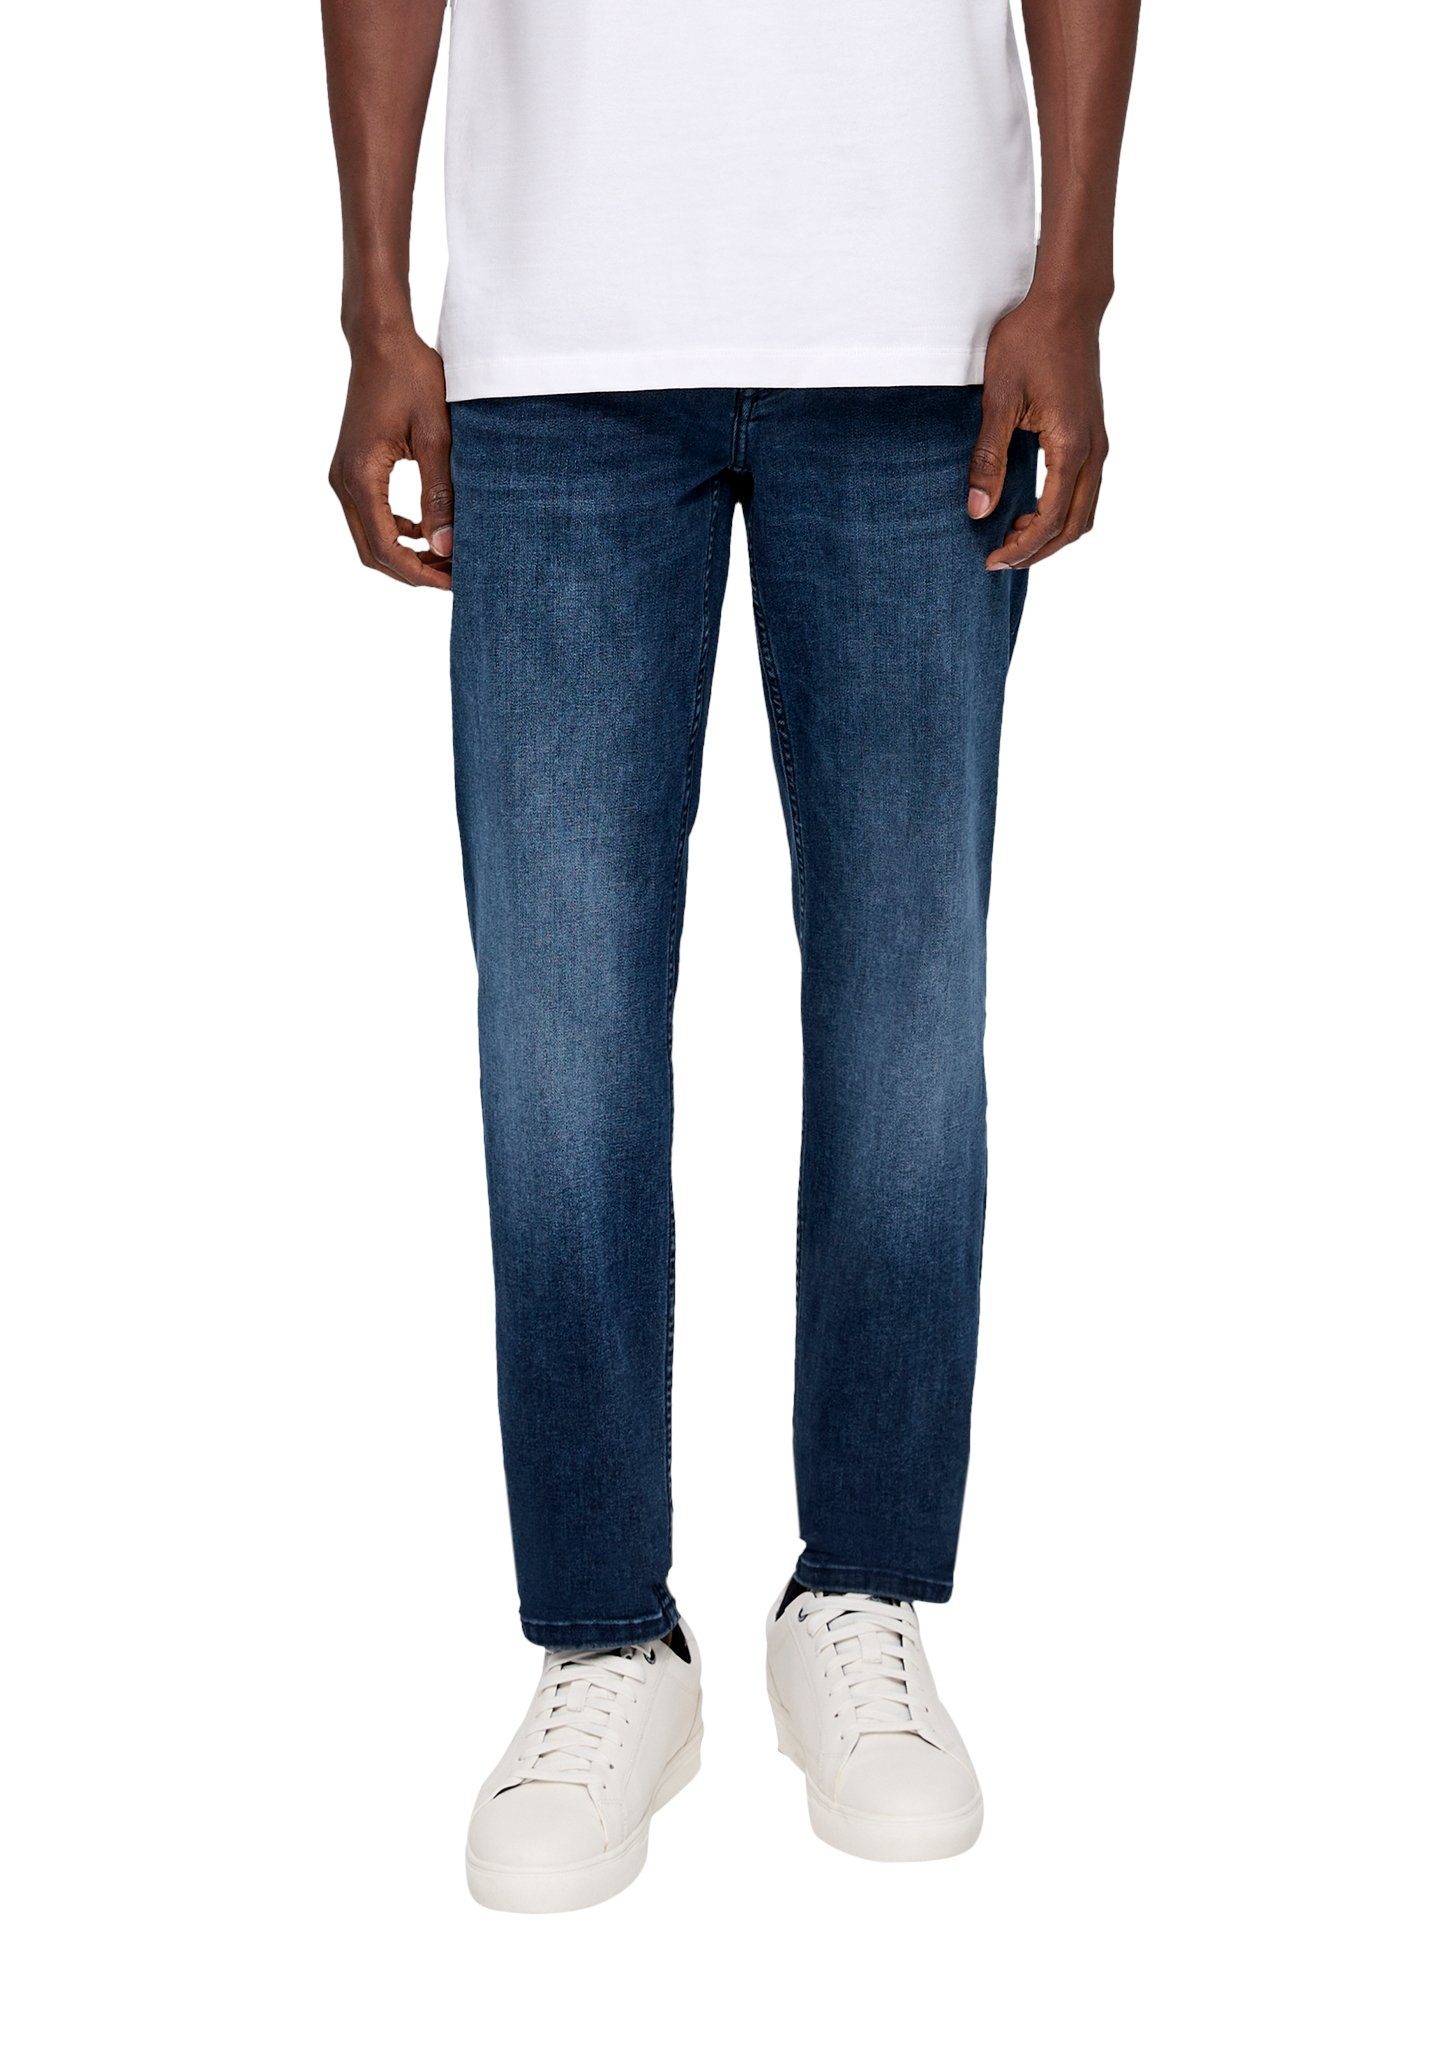 s.Oliver Bequeme Jeans mit geradem Beinverlauf blue34